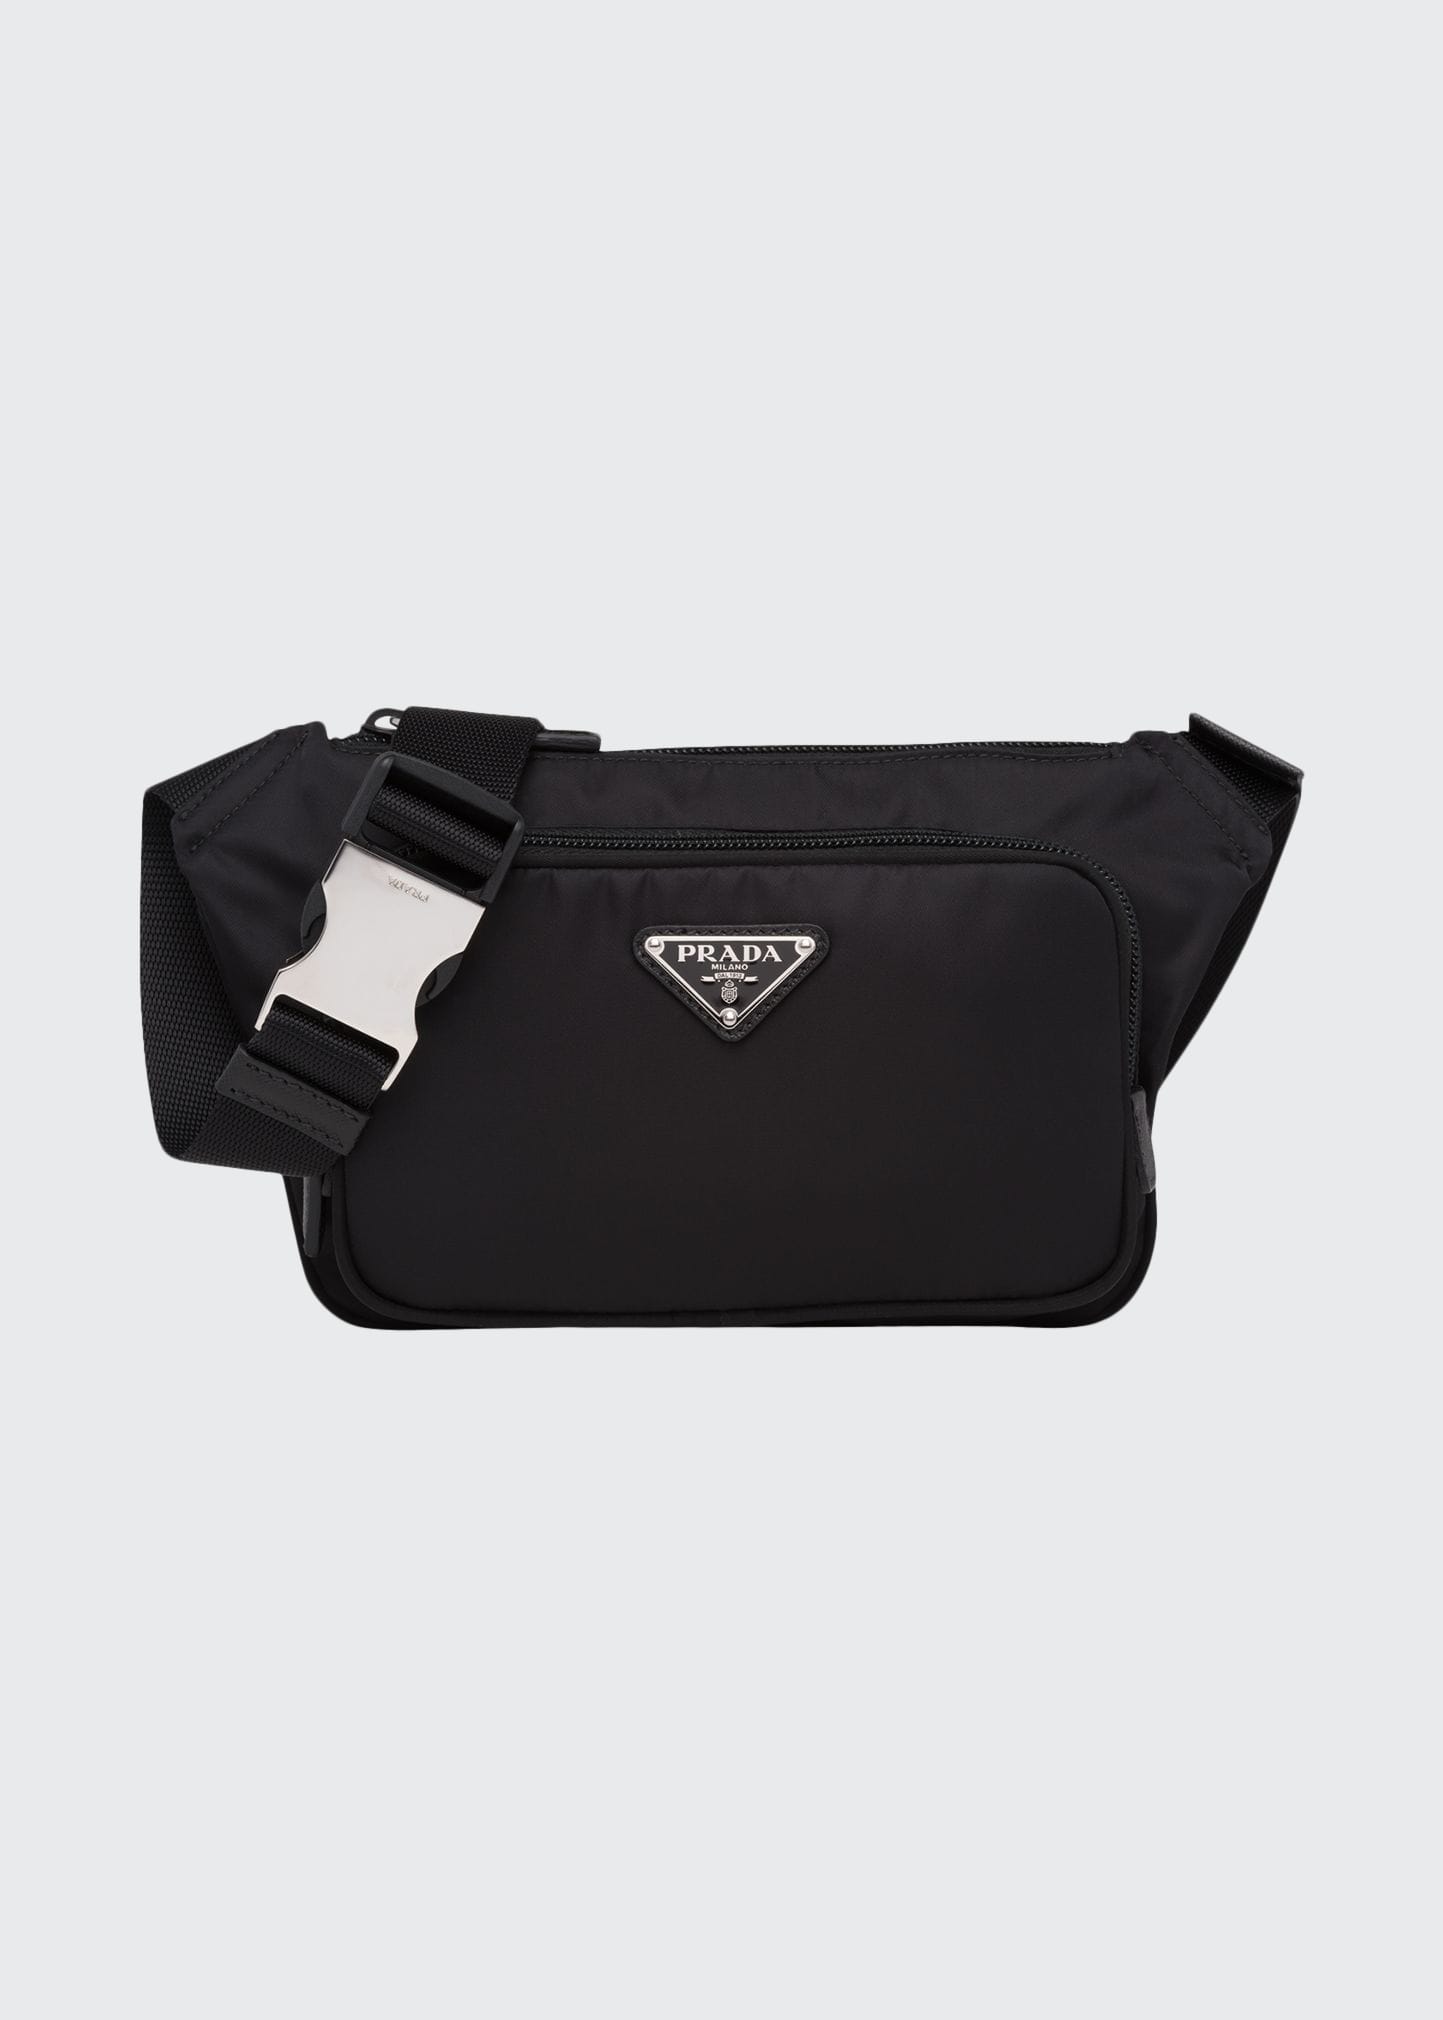 Prada Men's Re-nylon Crossbody Bag In Black